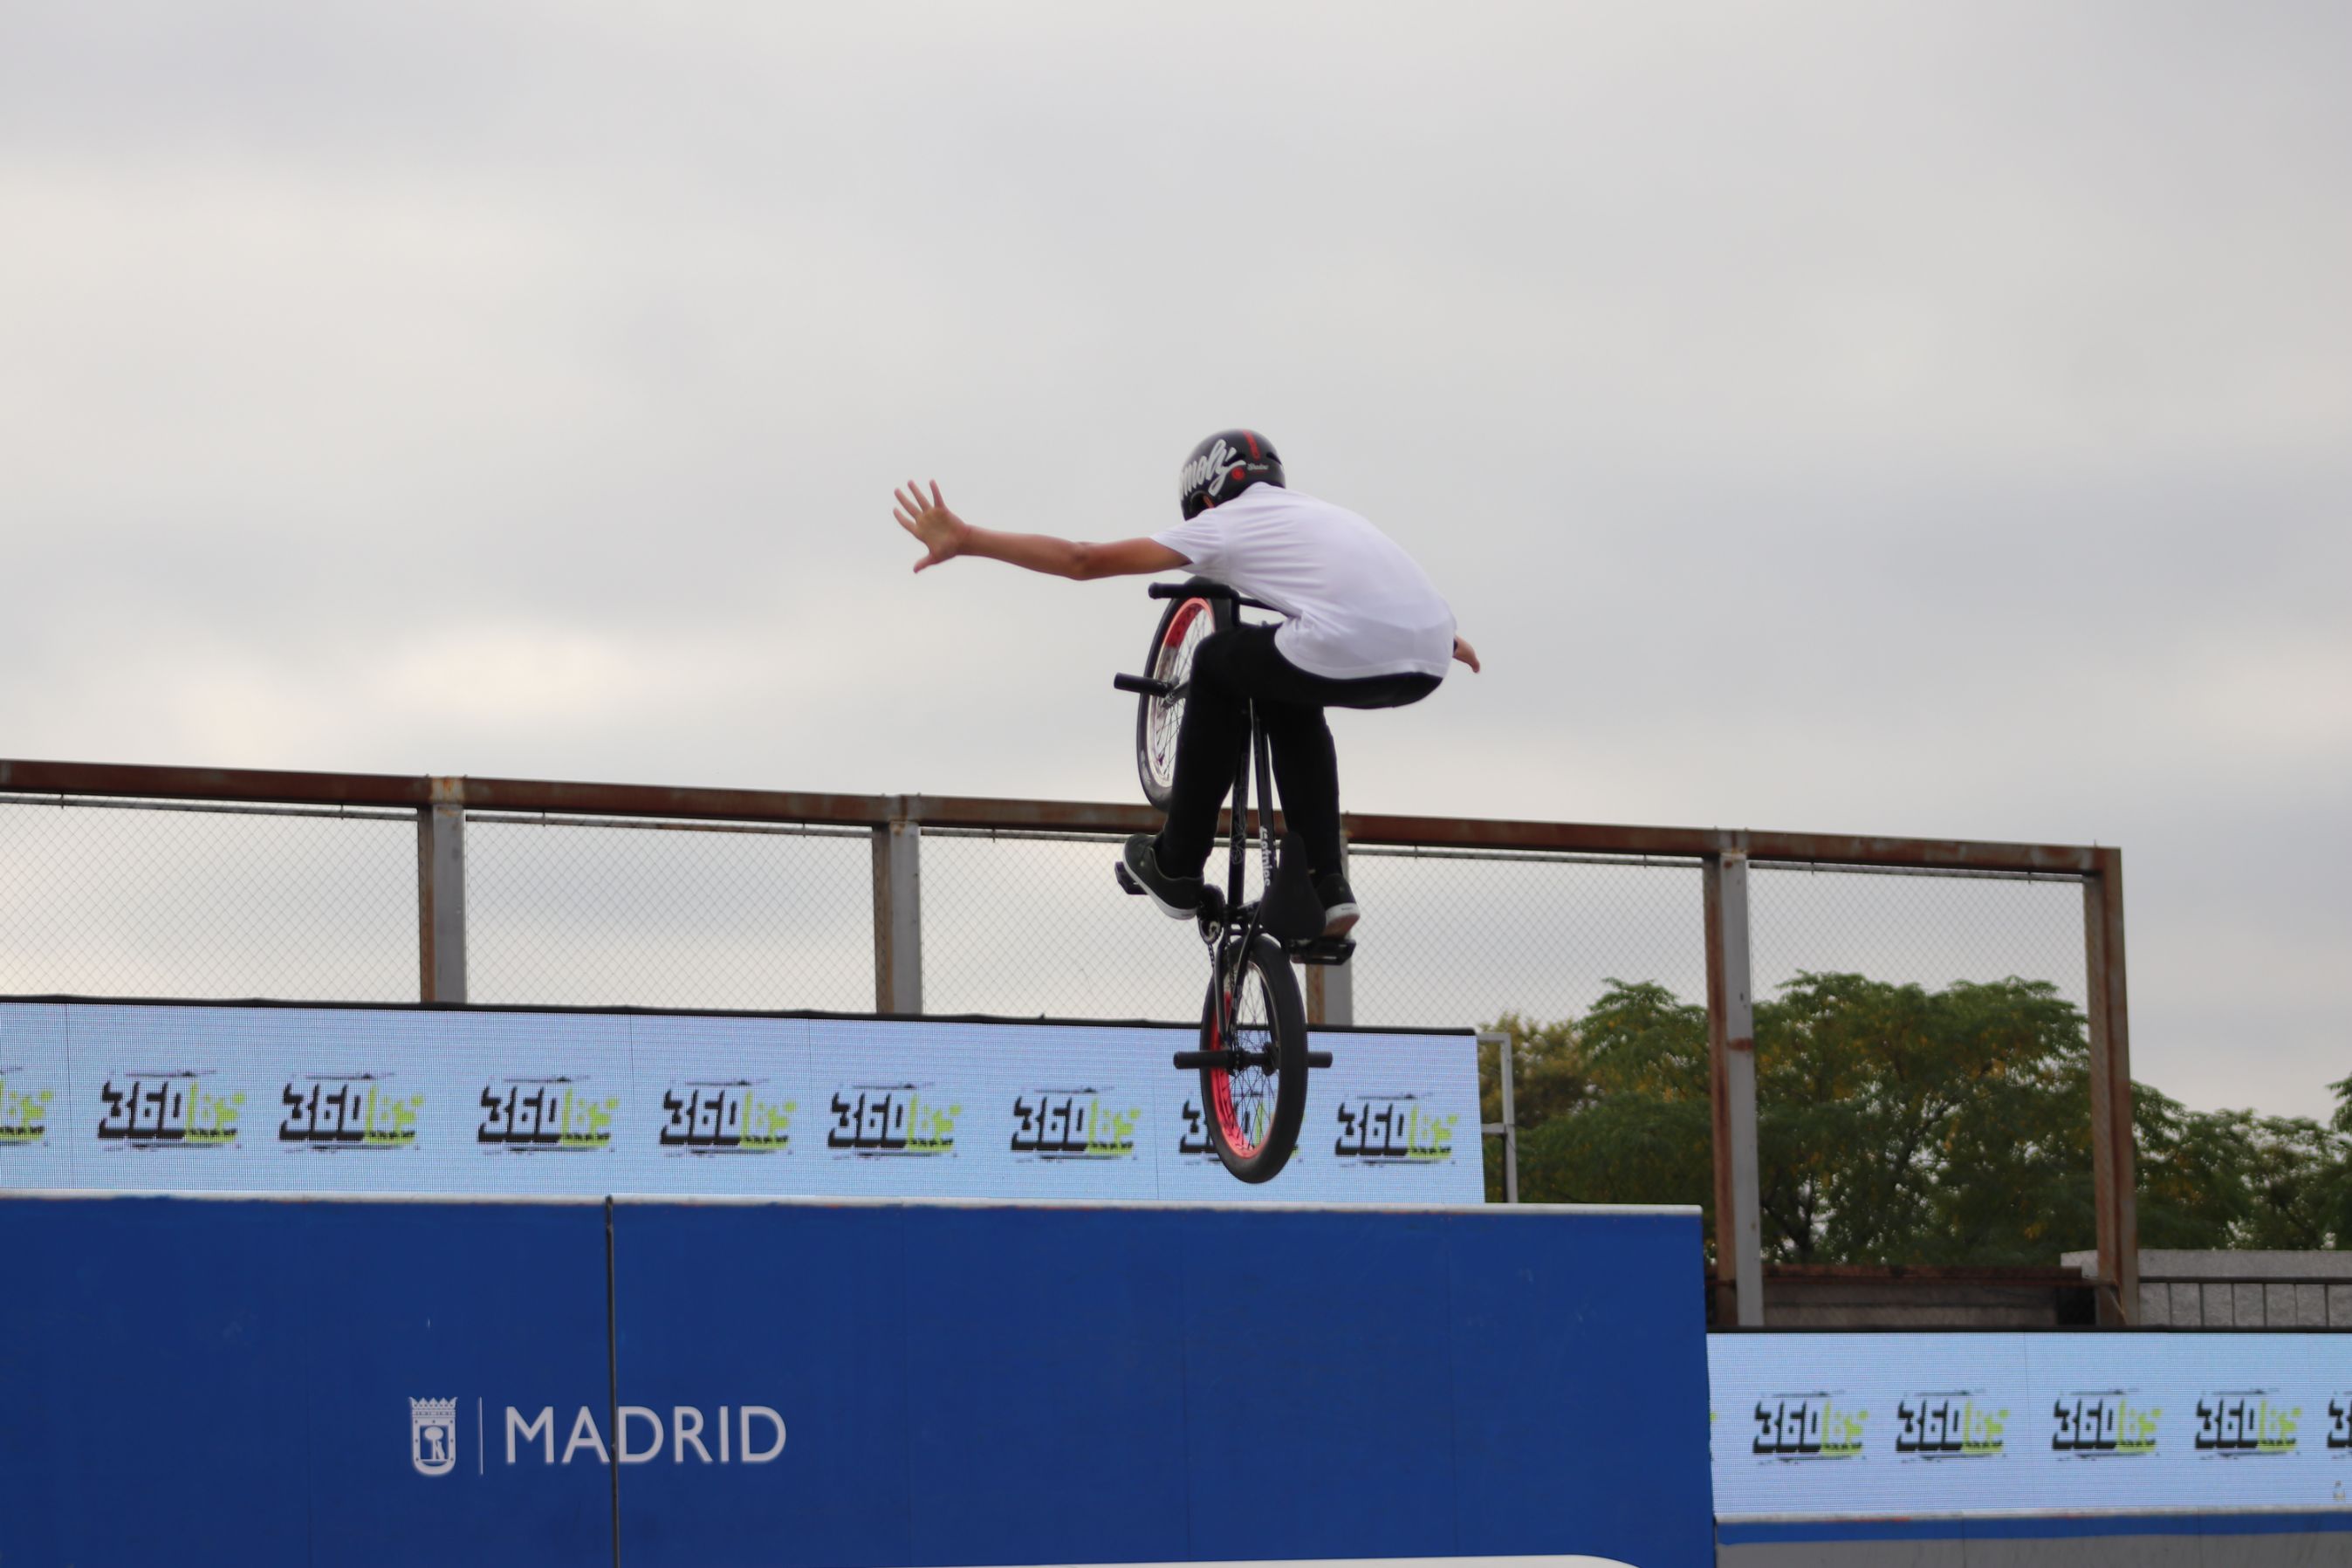 Saúl Vilar faise co título júnior no Campionato de España de BMX Freestyle Park